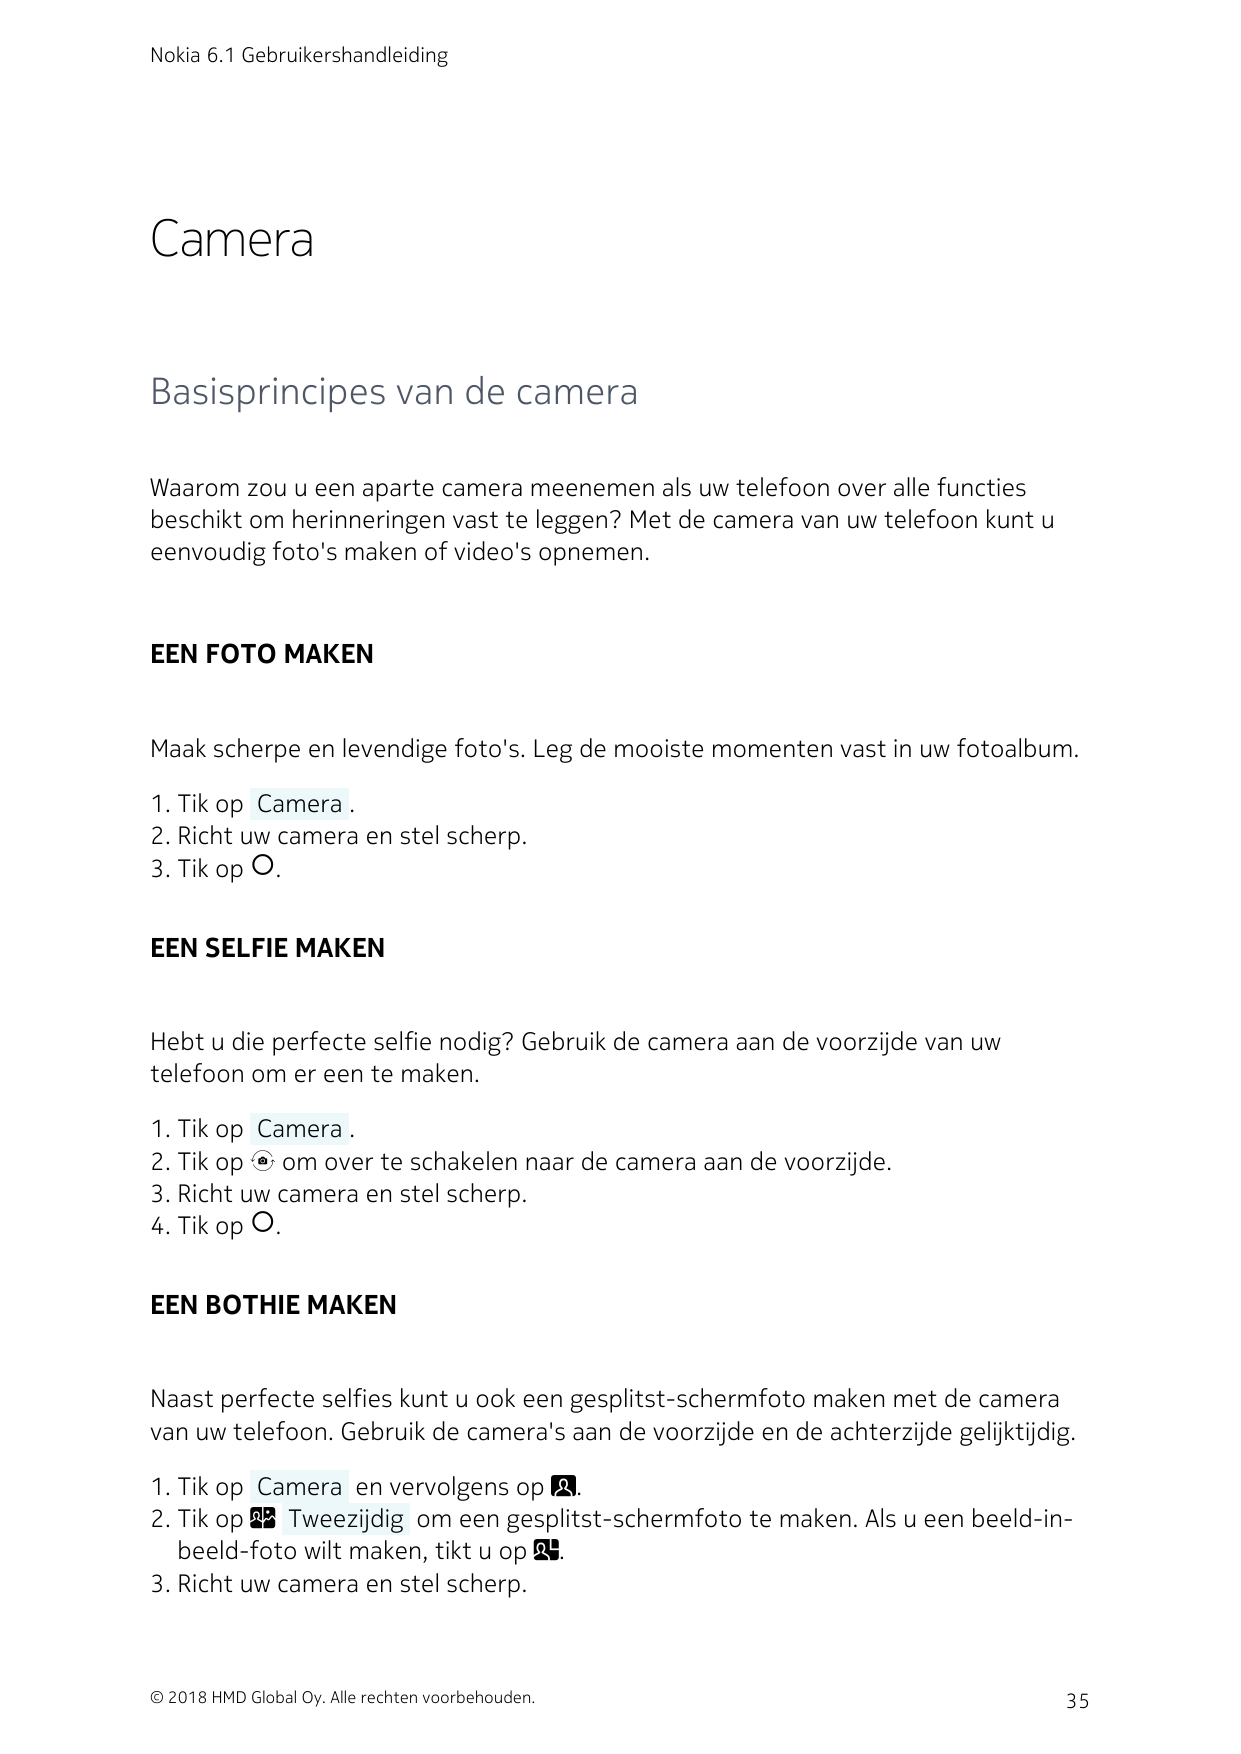 Nokia 6.1 GebruikershandleidingCameraBasisprincipes van de cameraWaarom zou u een aparte camera meenemen als uw telefoon over al